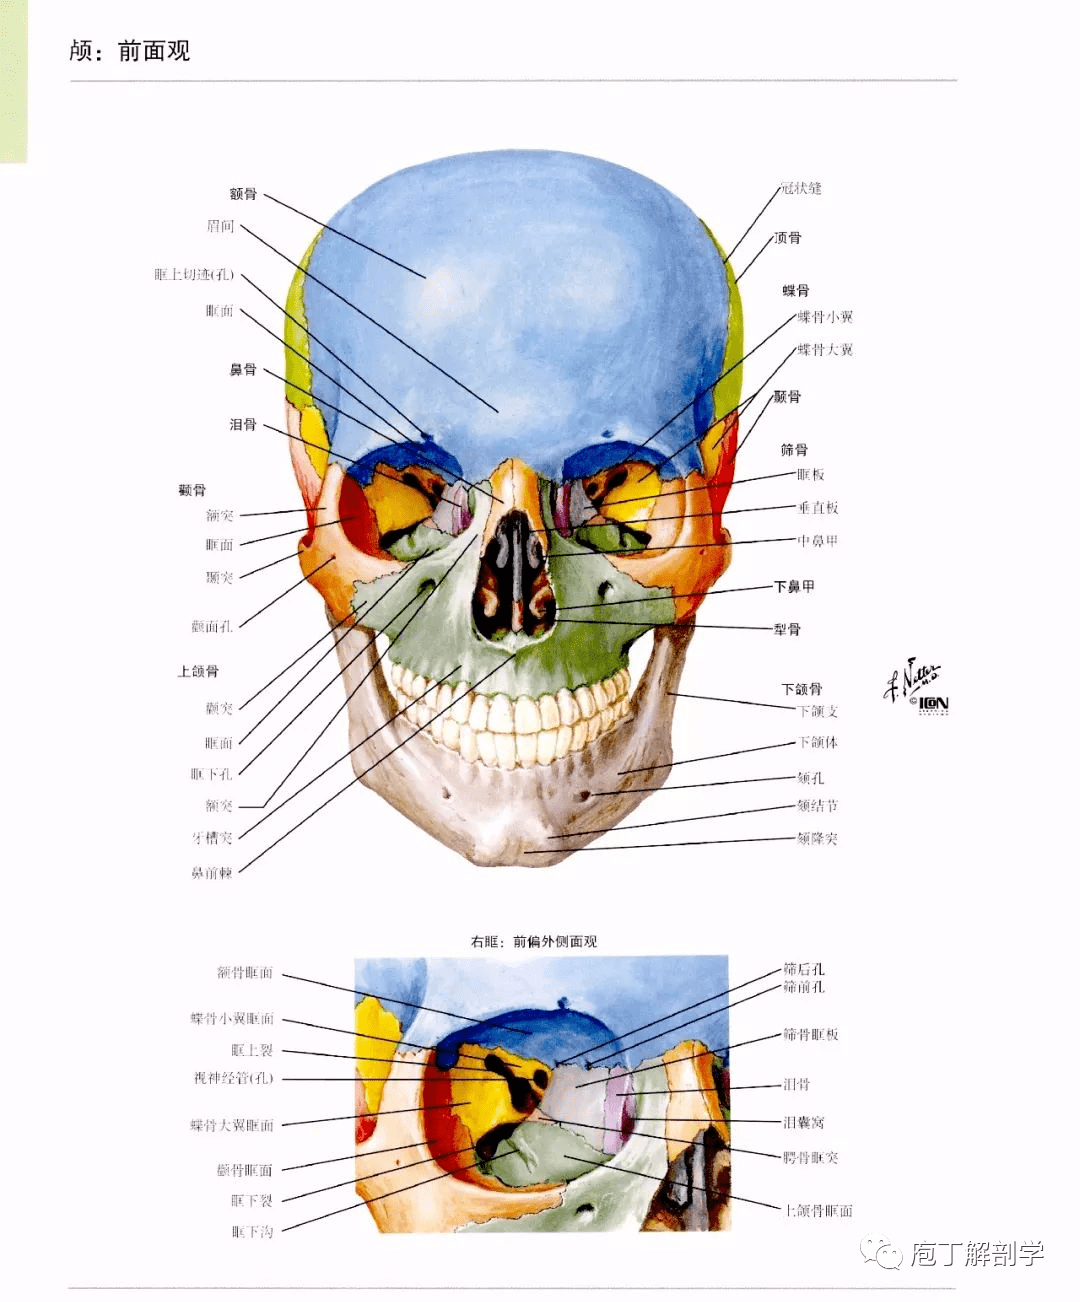 圆孔 上颌神经 卵圆孔 下颌神经 棘孔 脑膜中动脉 颅后窝 枕骨大孔